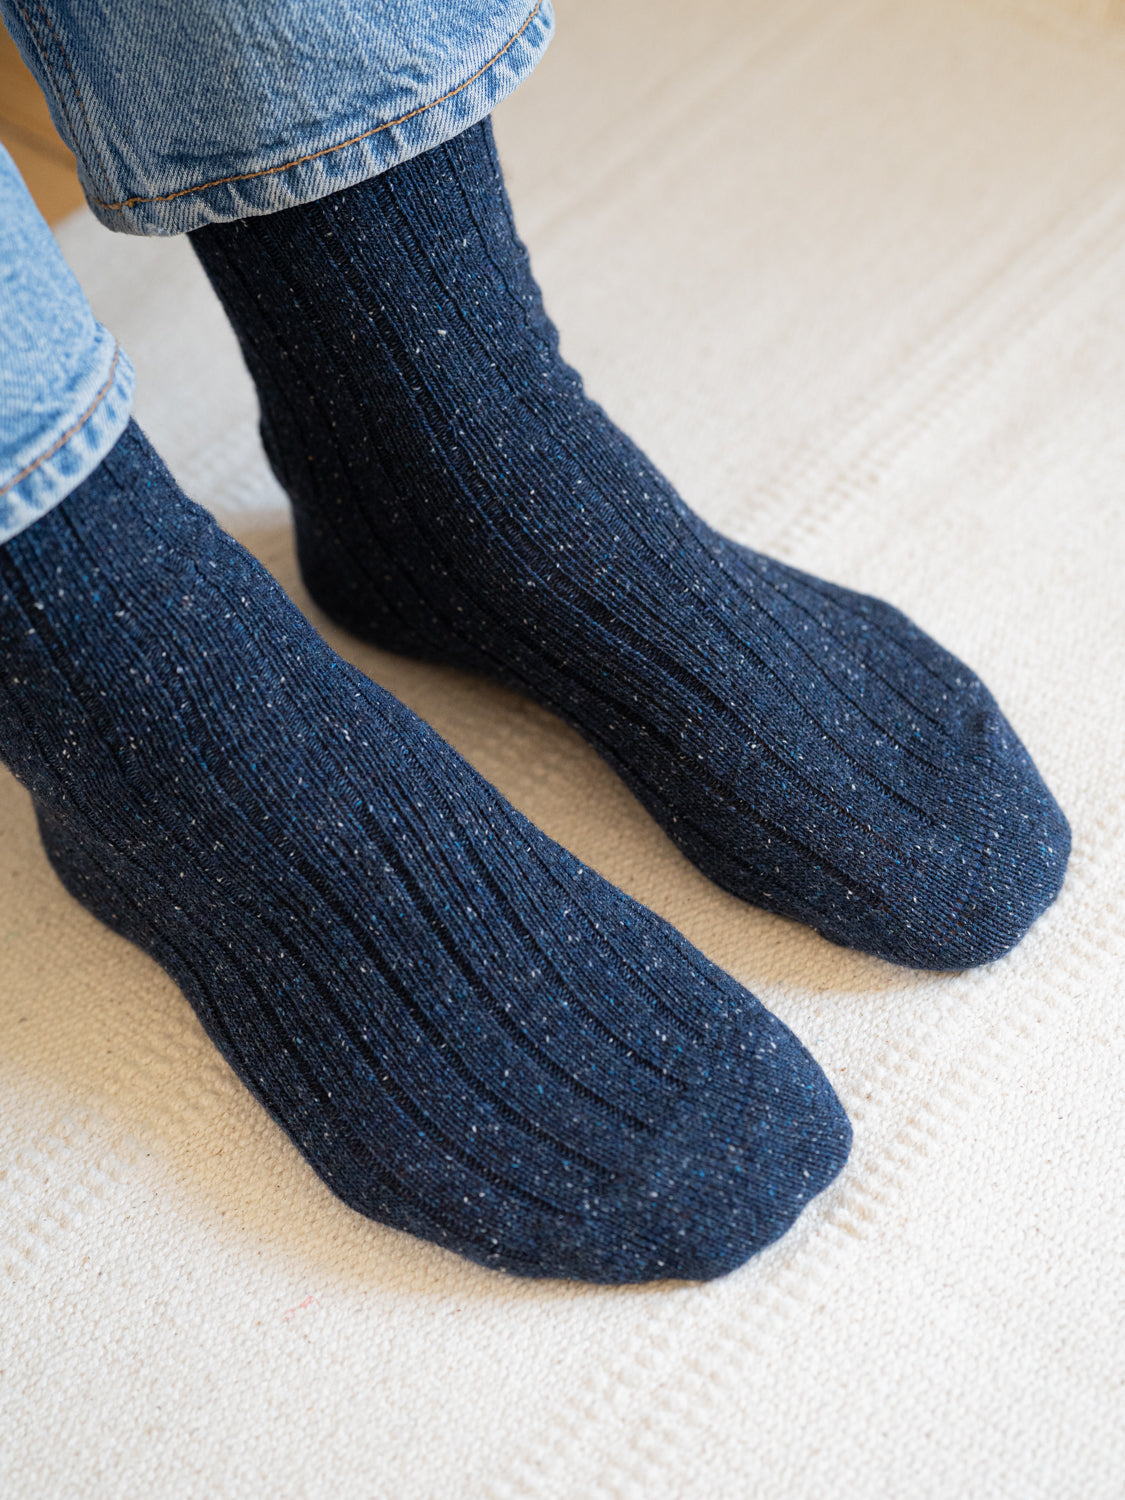 Nachhaltige FUXBAU Fair Fashion Socken in navy mit neps in weiss und blau.